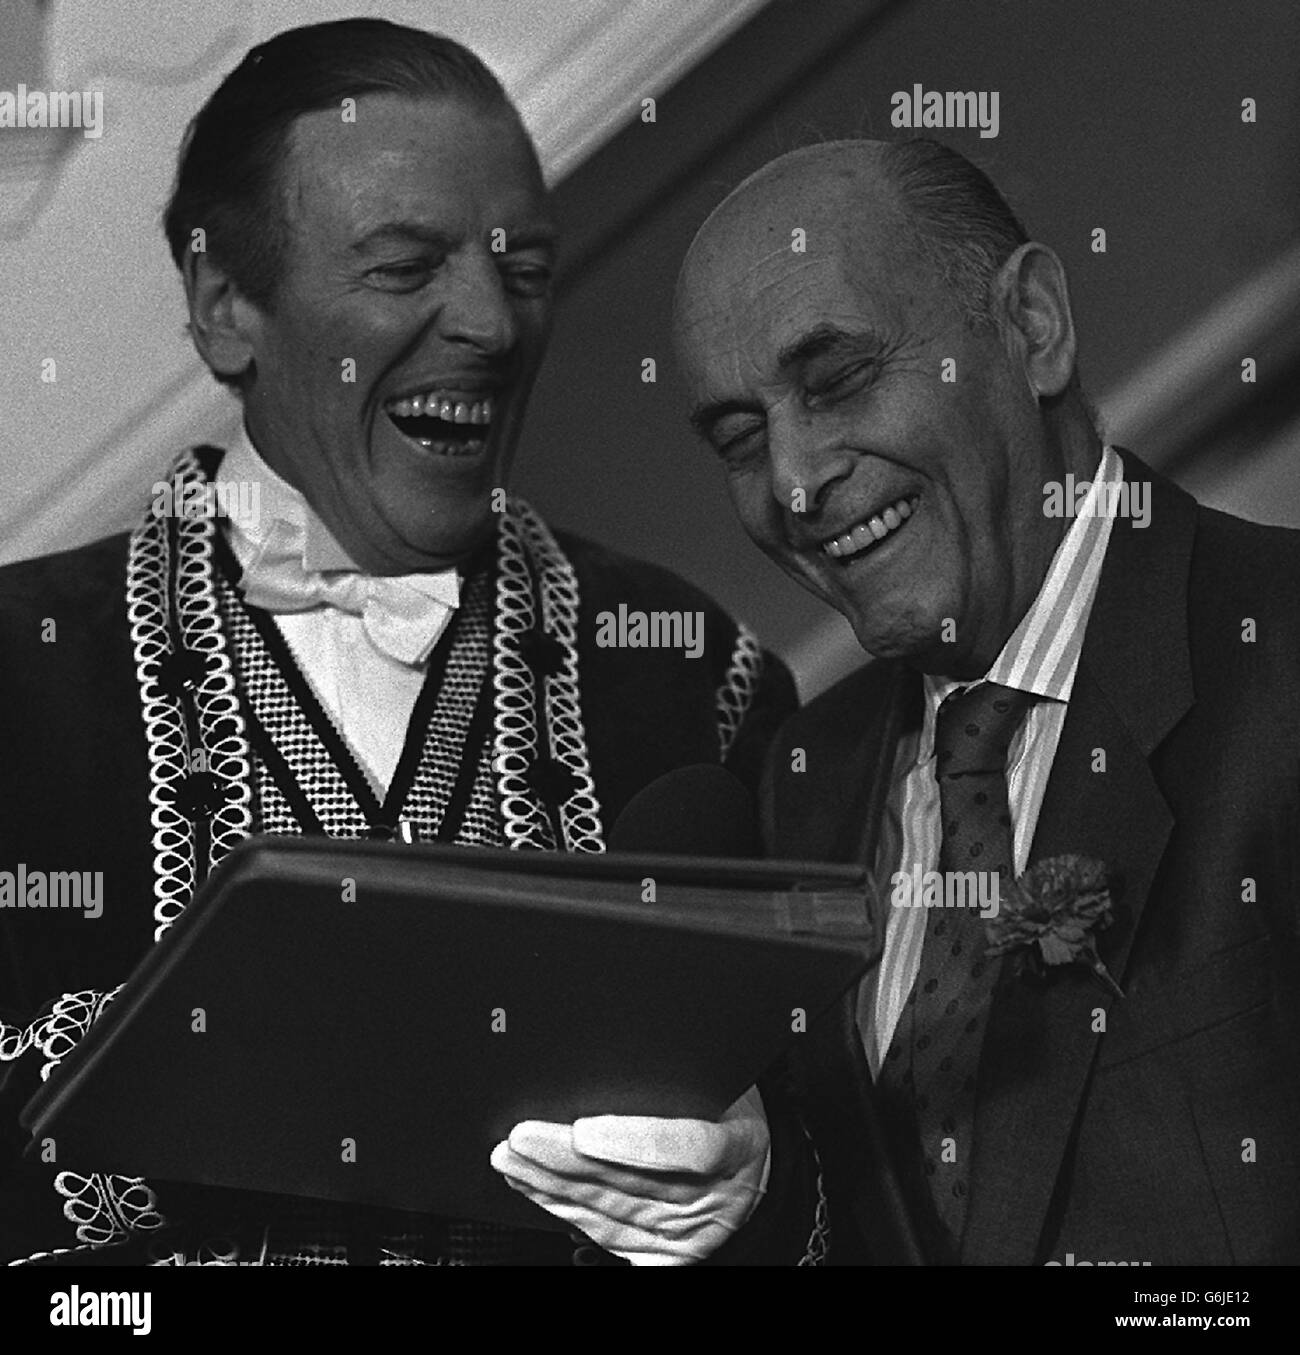 Eamonn Andrews e Sir Georg Solti. Eamonn Andrews affronta Sir Georg Solti in una festa per celebrare il 75° compleanno del direttore, presso l'Opera House di Covent Garden. Foto Stock